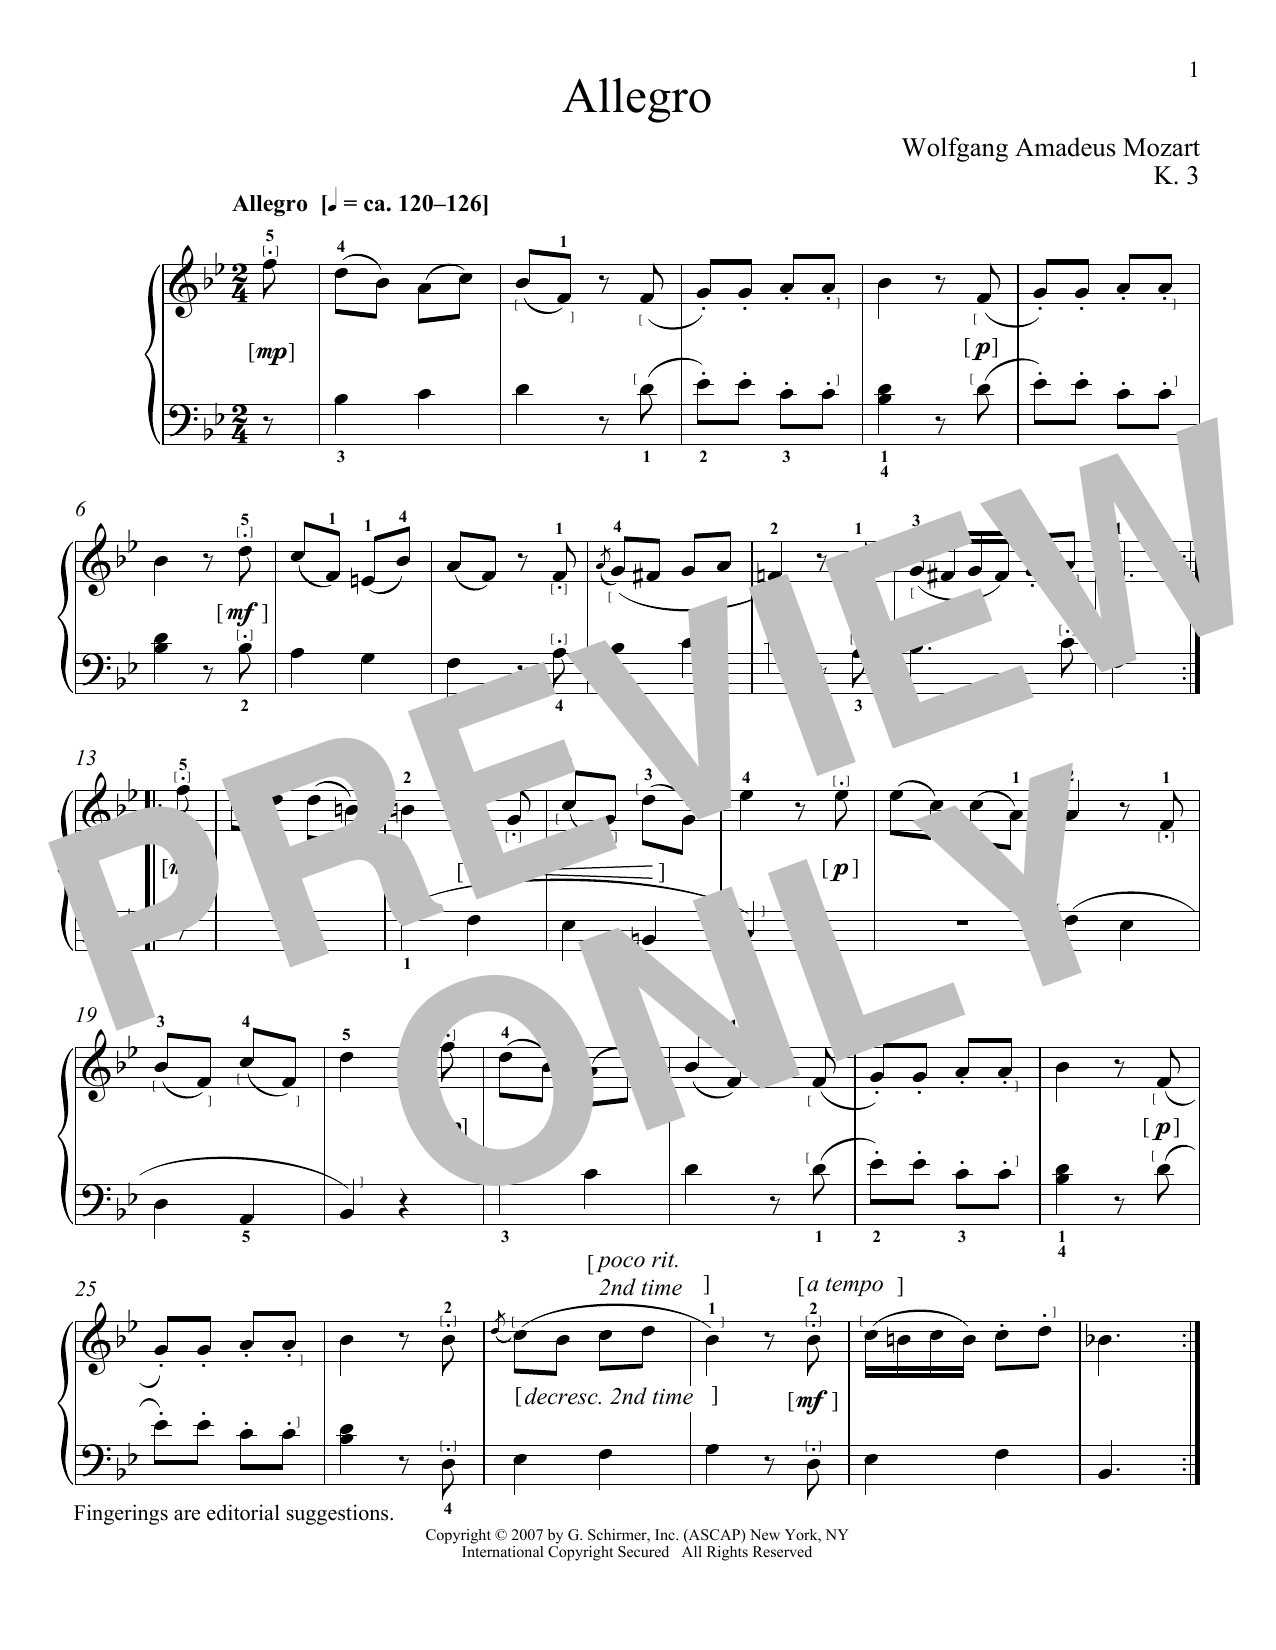 Download Wolfgang Amadeus Mozart Allegro In B Flat Major, K. 3 Sheet Music